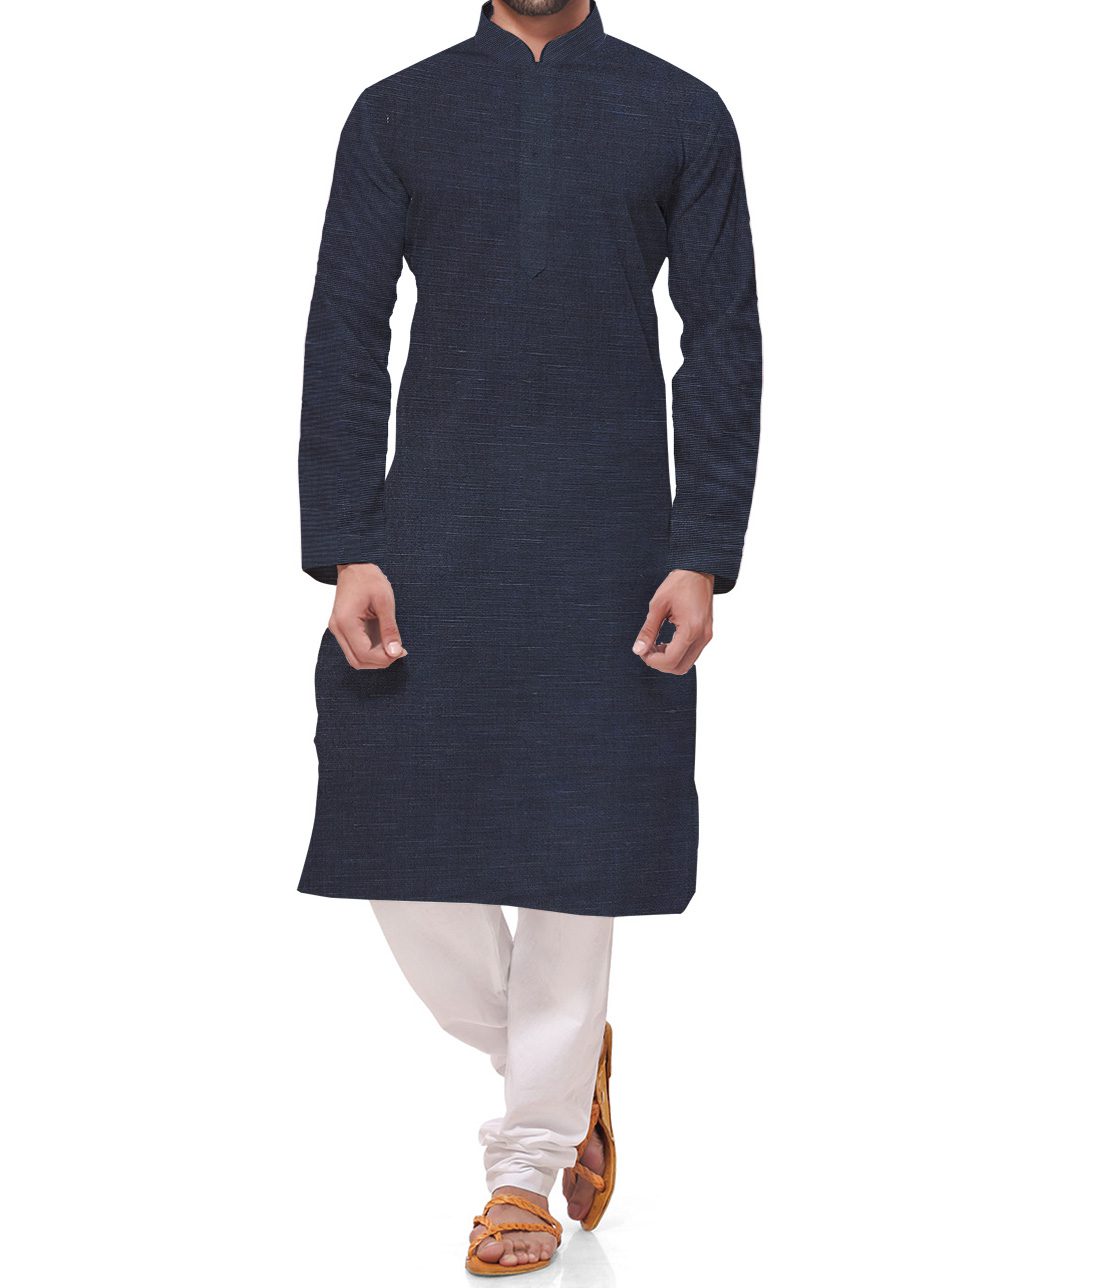 Arvind Men's Cotton Linen Self Design Unstitched Shirt Fabric (Dark Navy Blue)